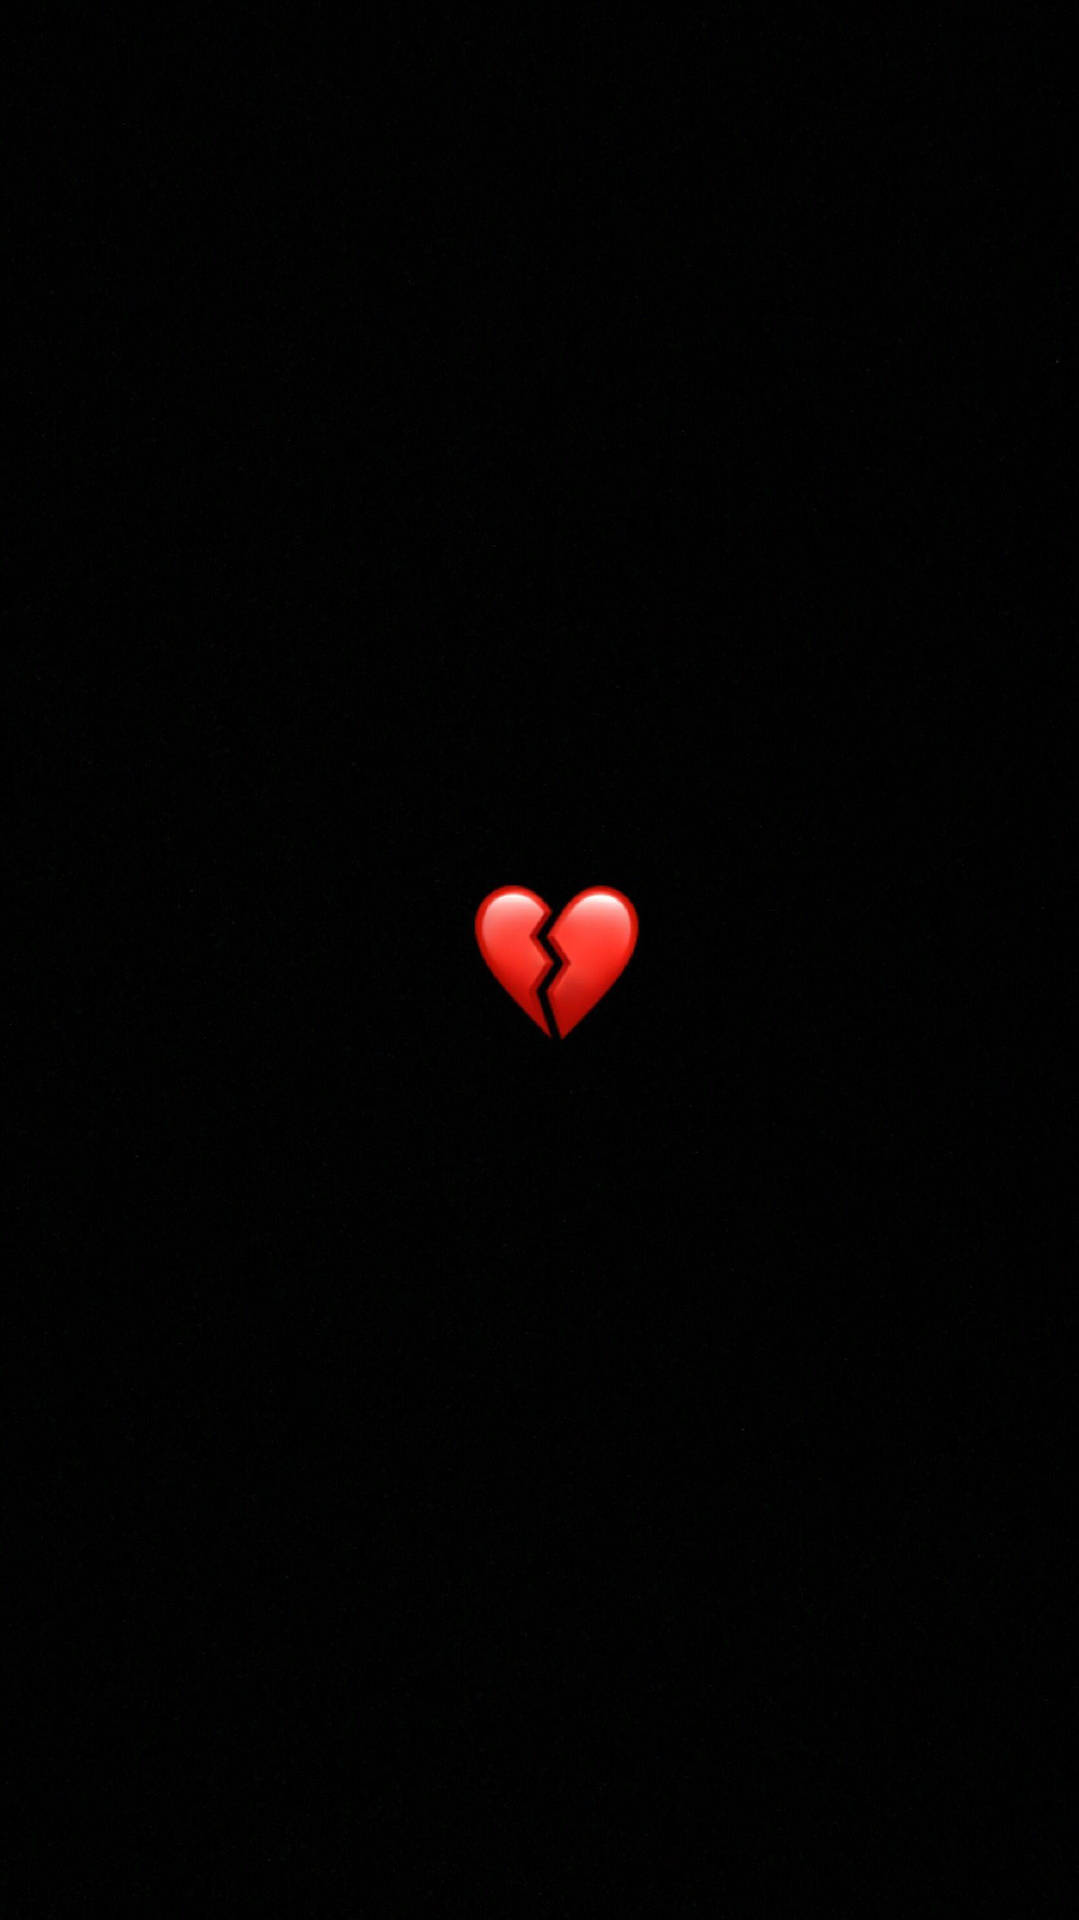 Red Broken Heart Iphone Wallpaper